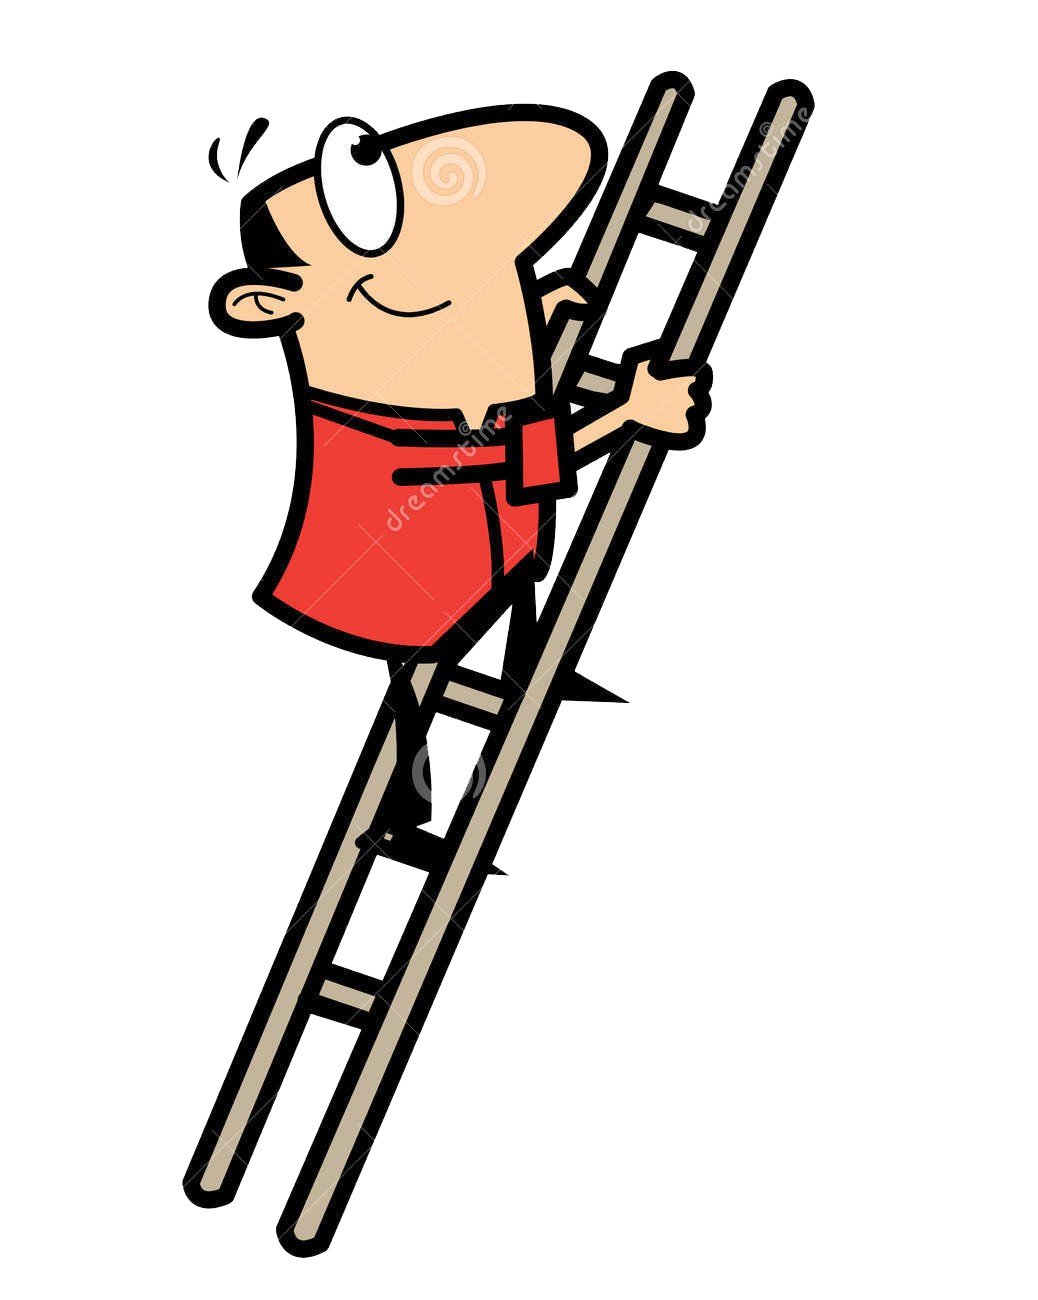 Ladder clipart line art. Climbing cartoon drawing clip